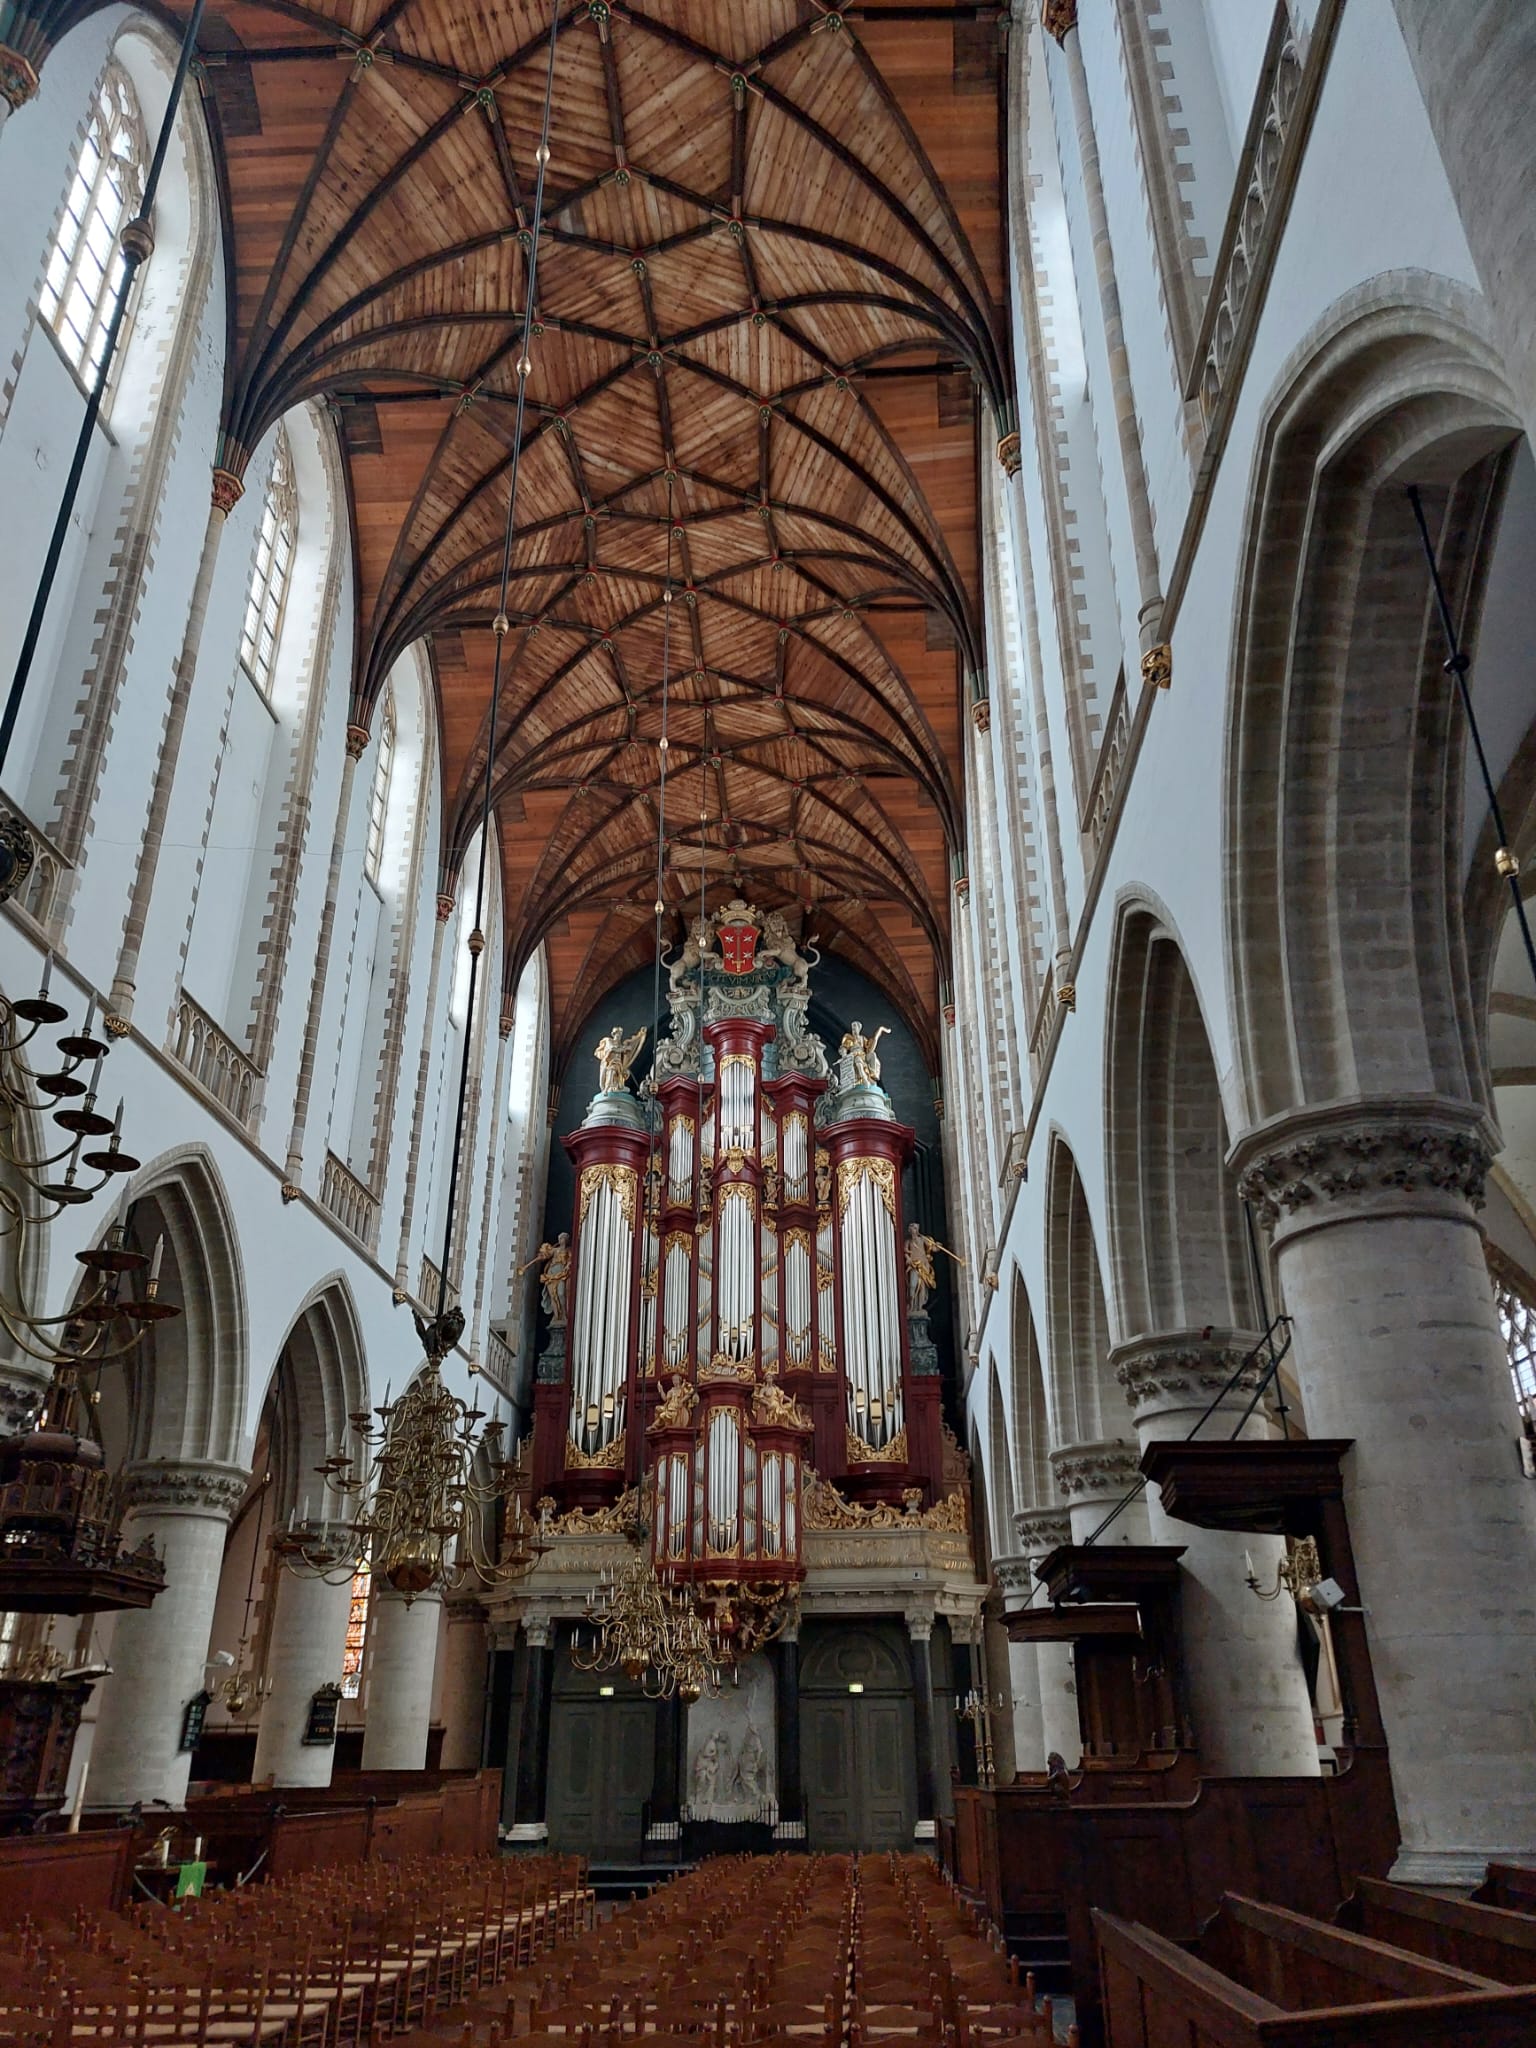 het meest gefotografeerde orgelfront ter wereld